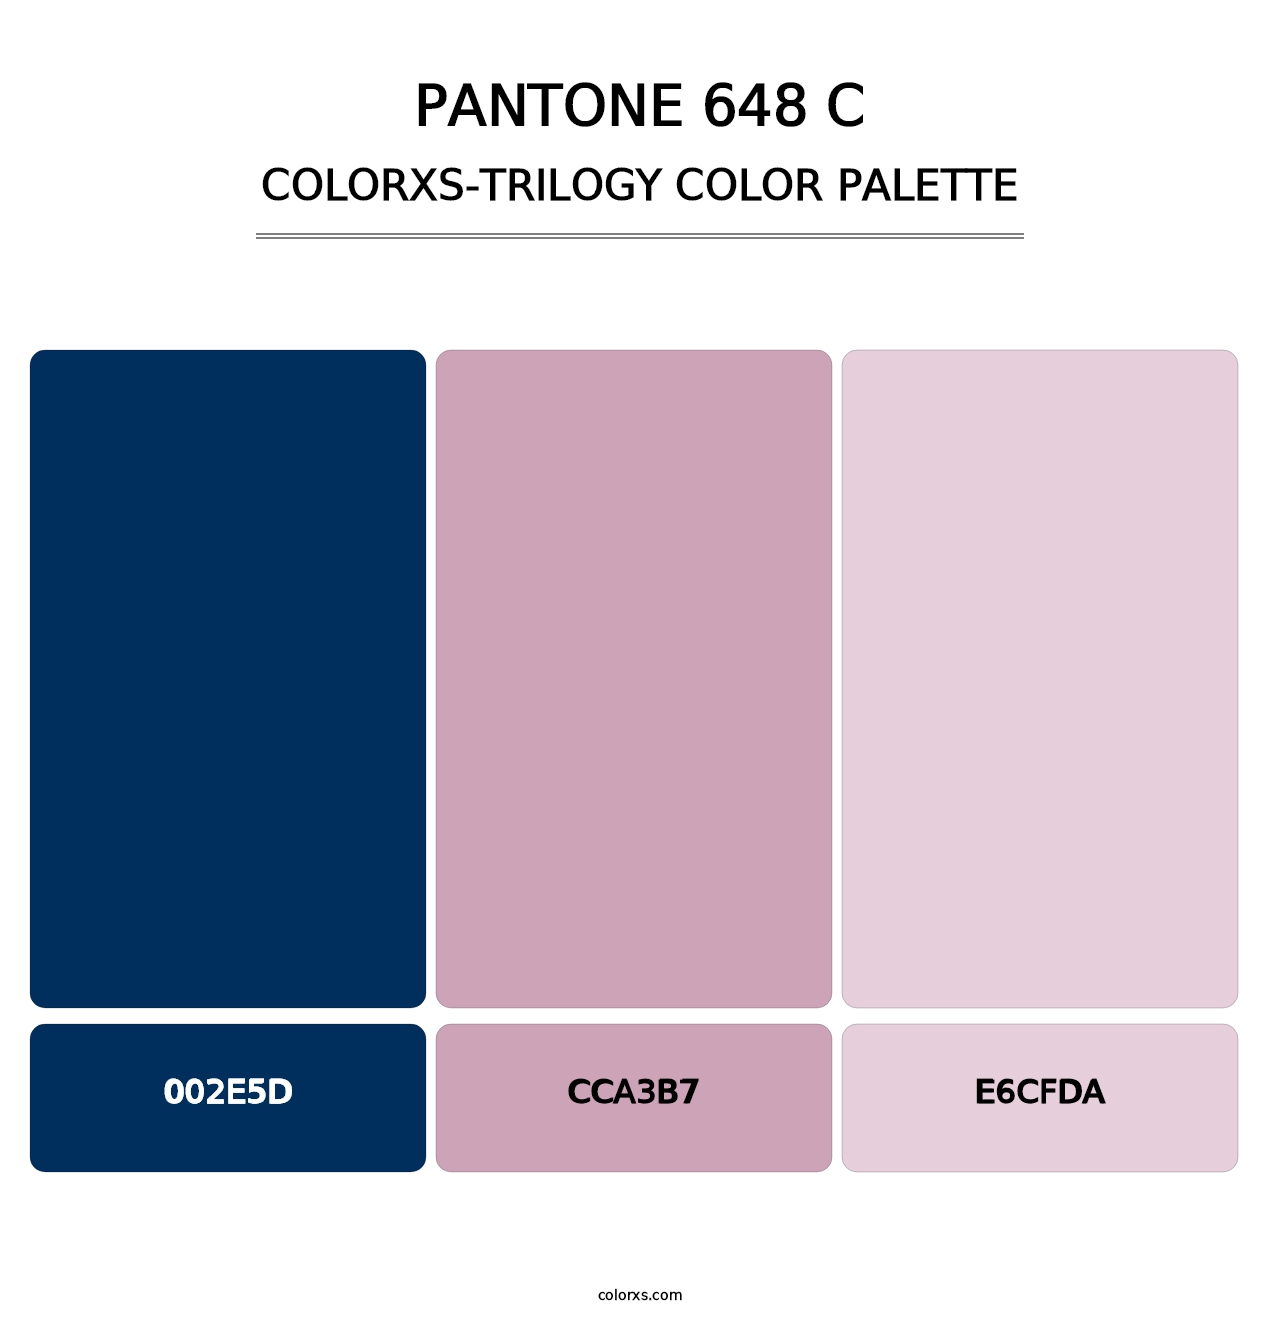 PANTONE 648 C - Colorxs Trilogy Palette